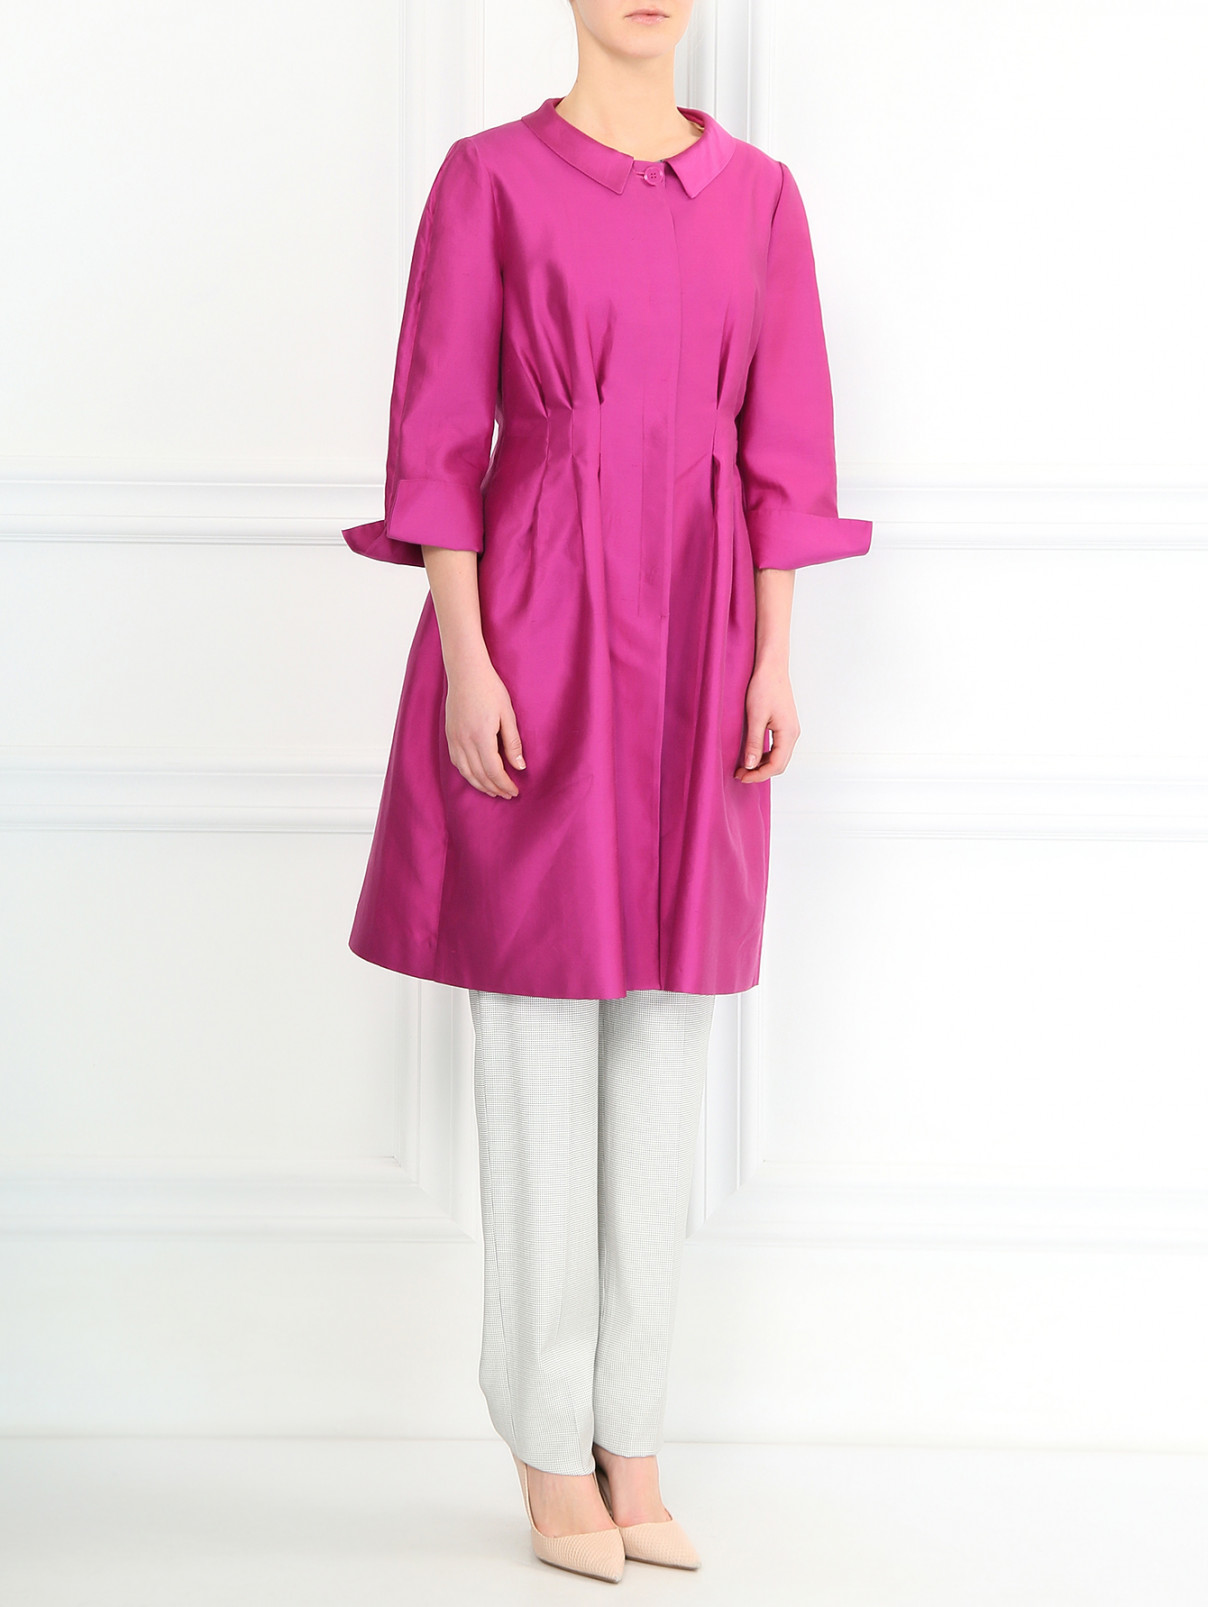 Пальто из хлопка и шелка Armani Collezioni  –  Модель Общий вид  – Цвет:  Фиолетовый